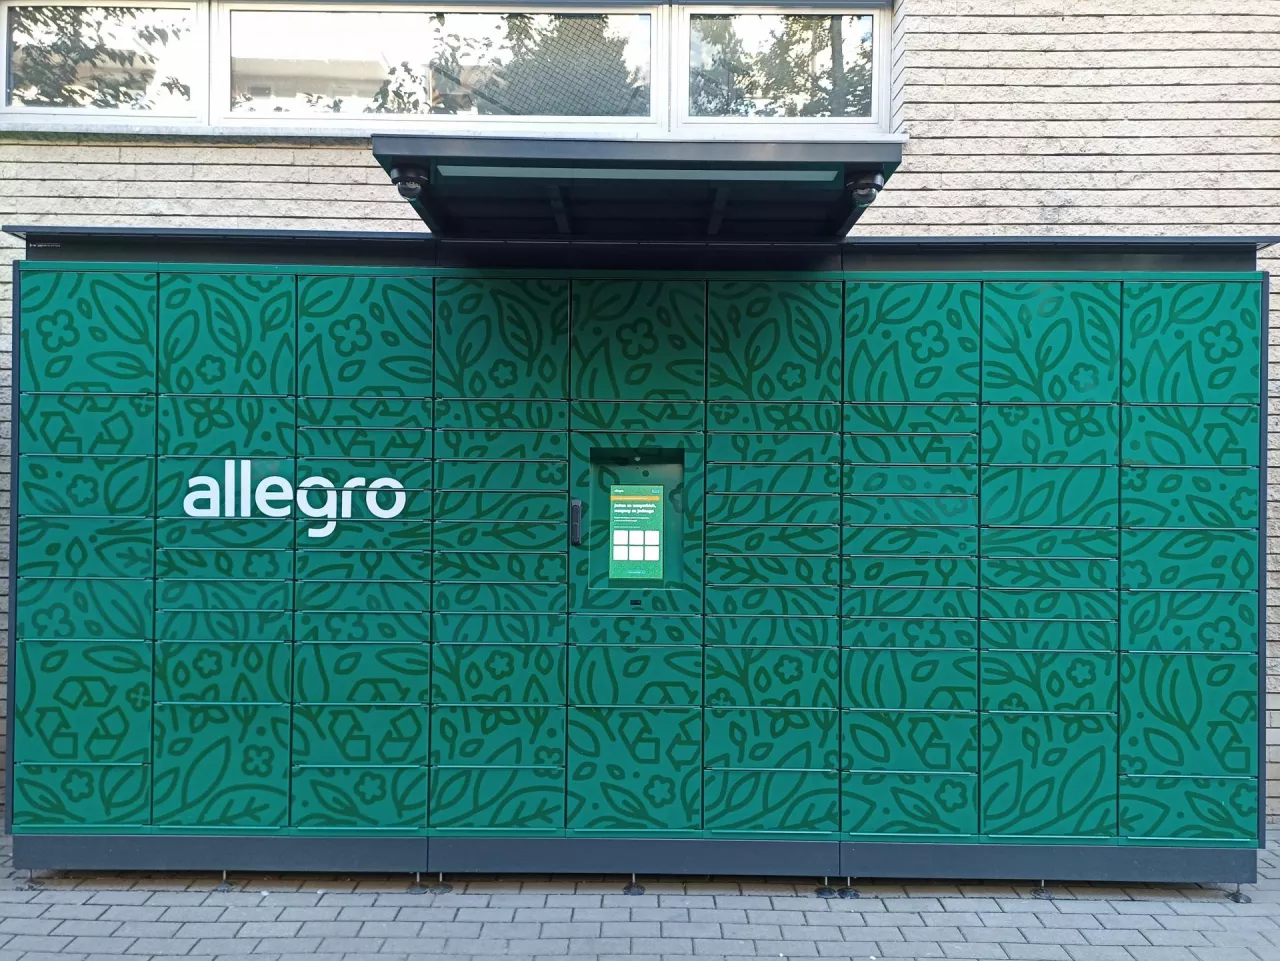 Automat paczkowy Allegro (wiadomoscihandlowe.pl/AK)